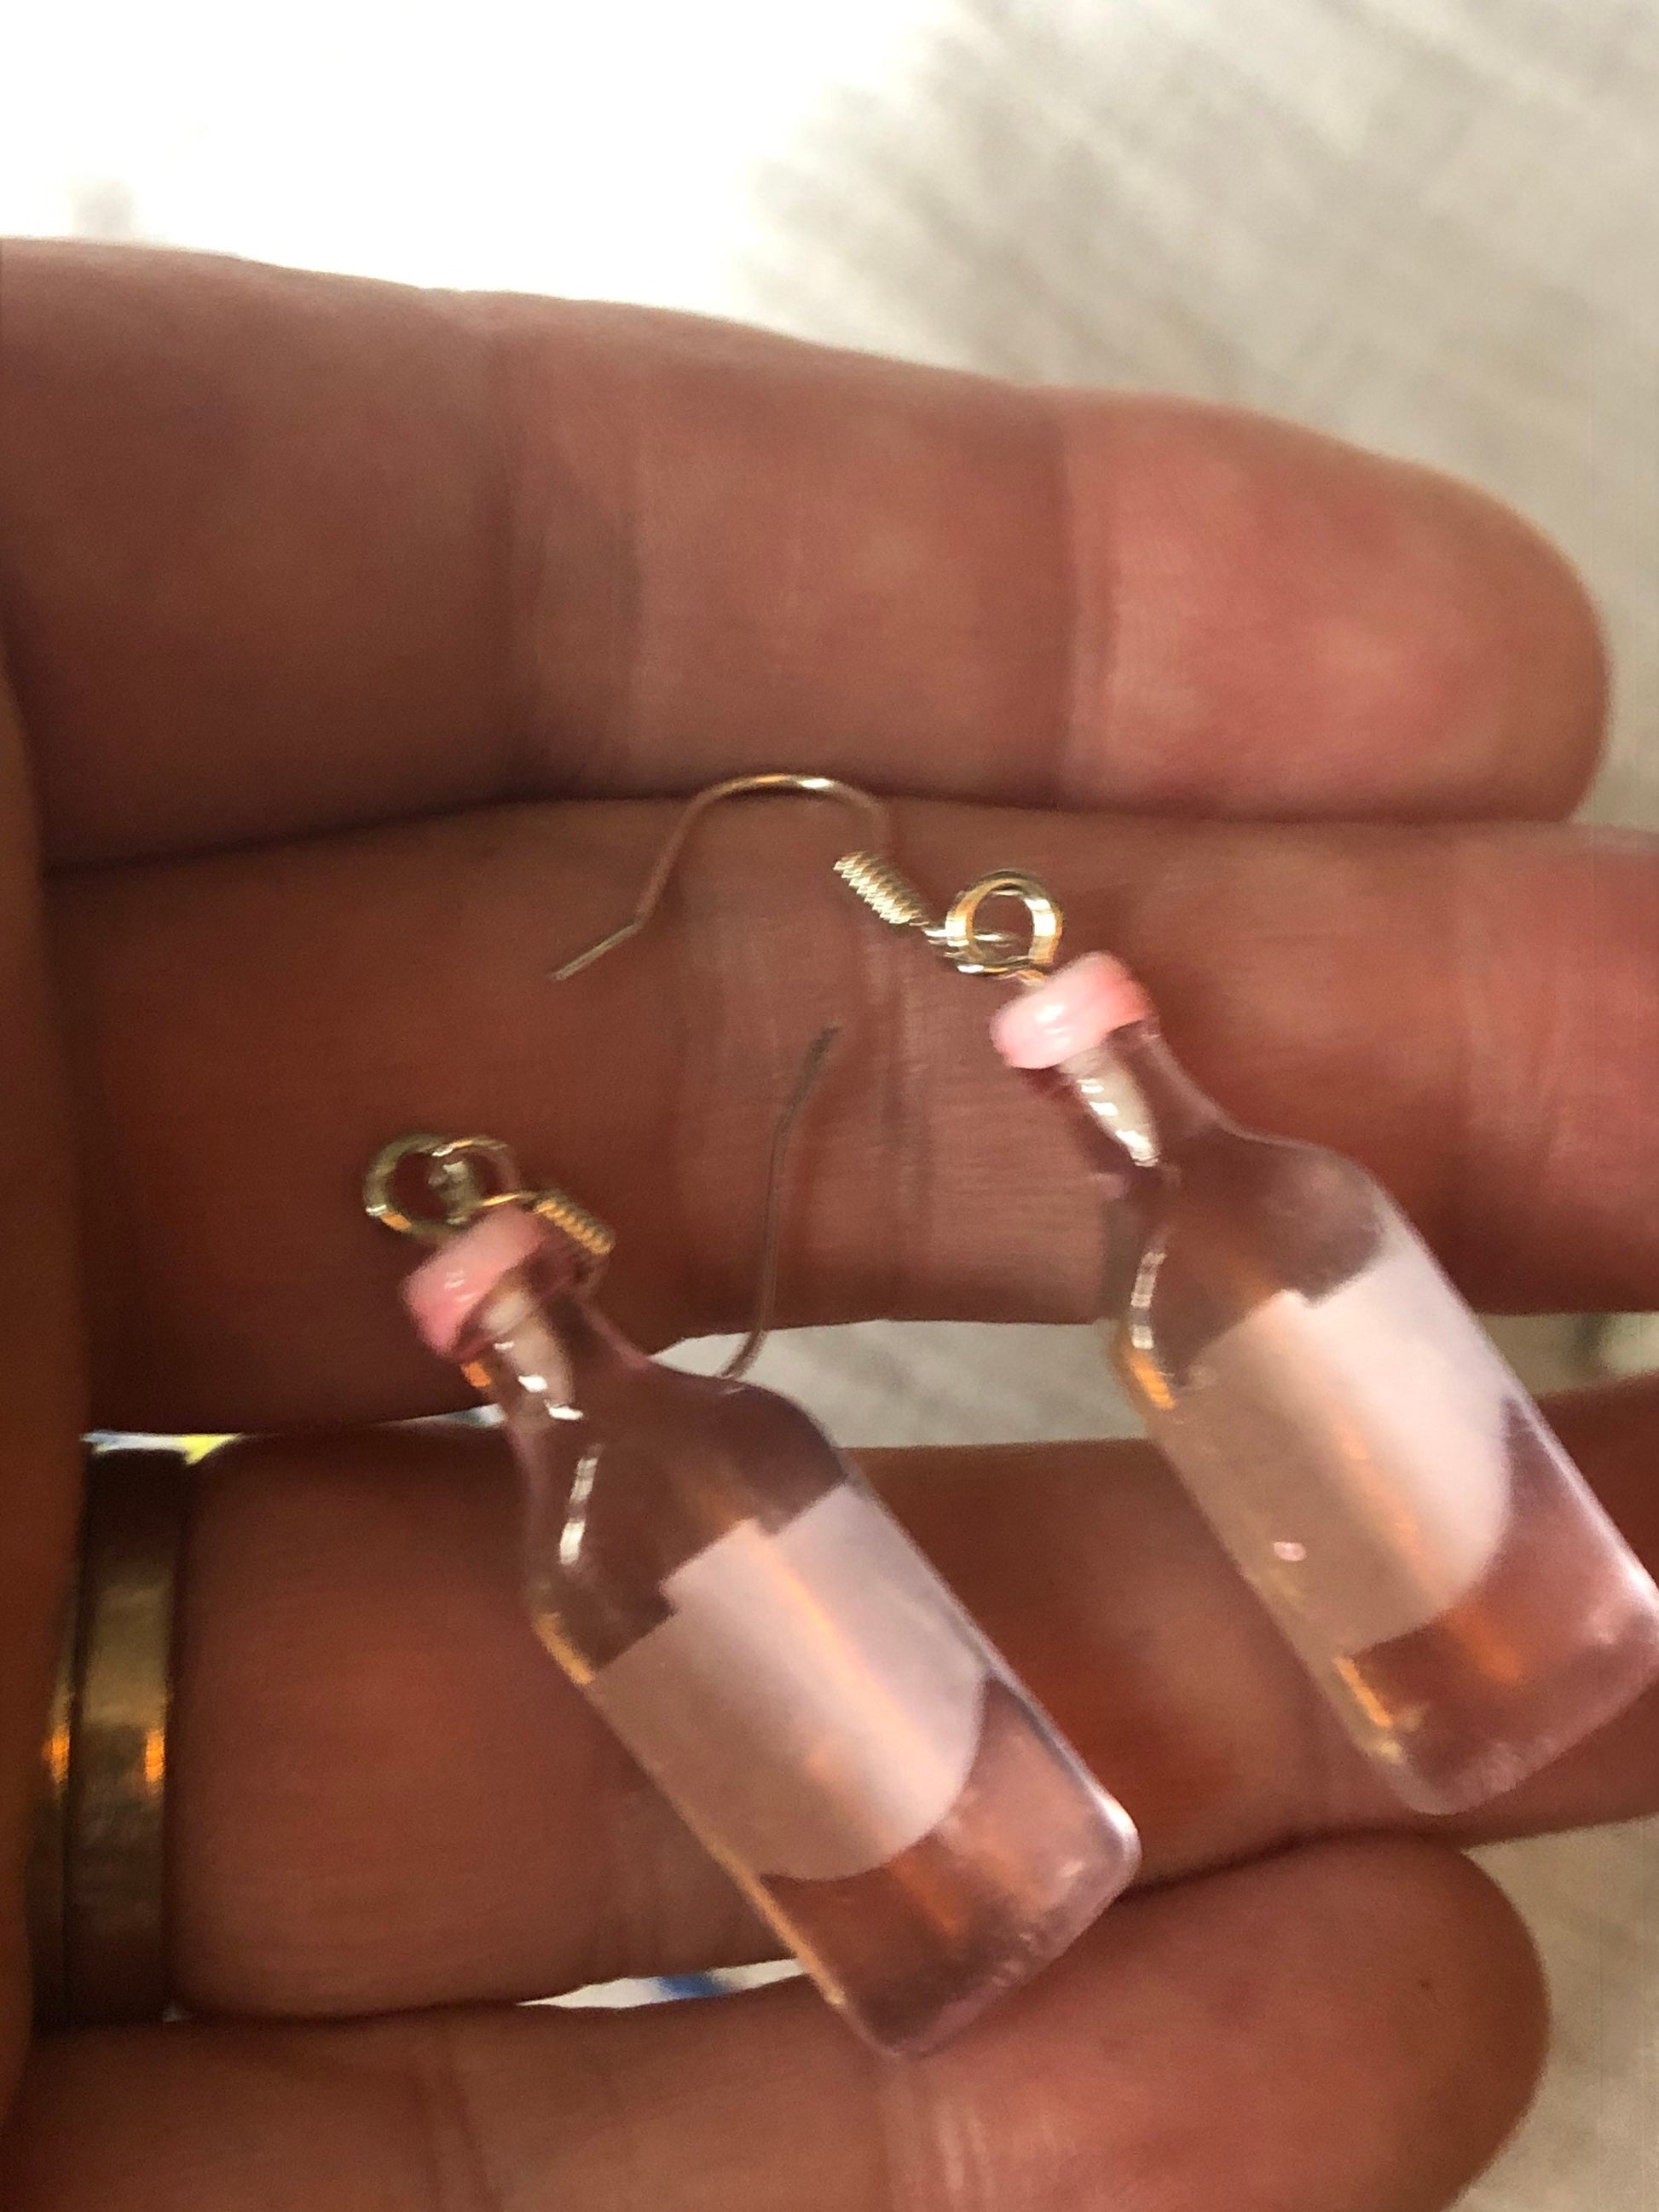 Novelty pink gin plastic bottle drop earrings